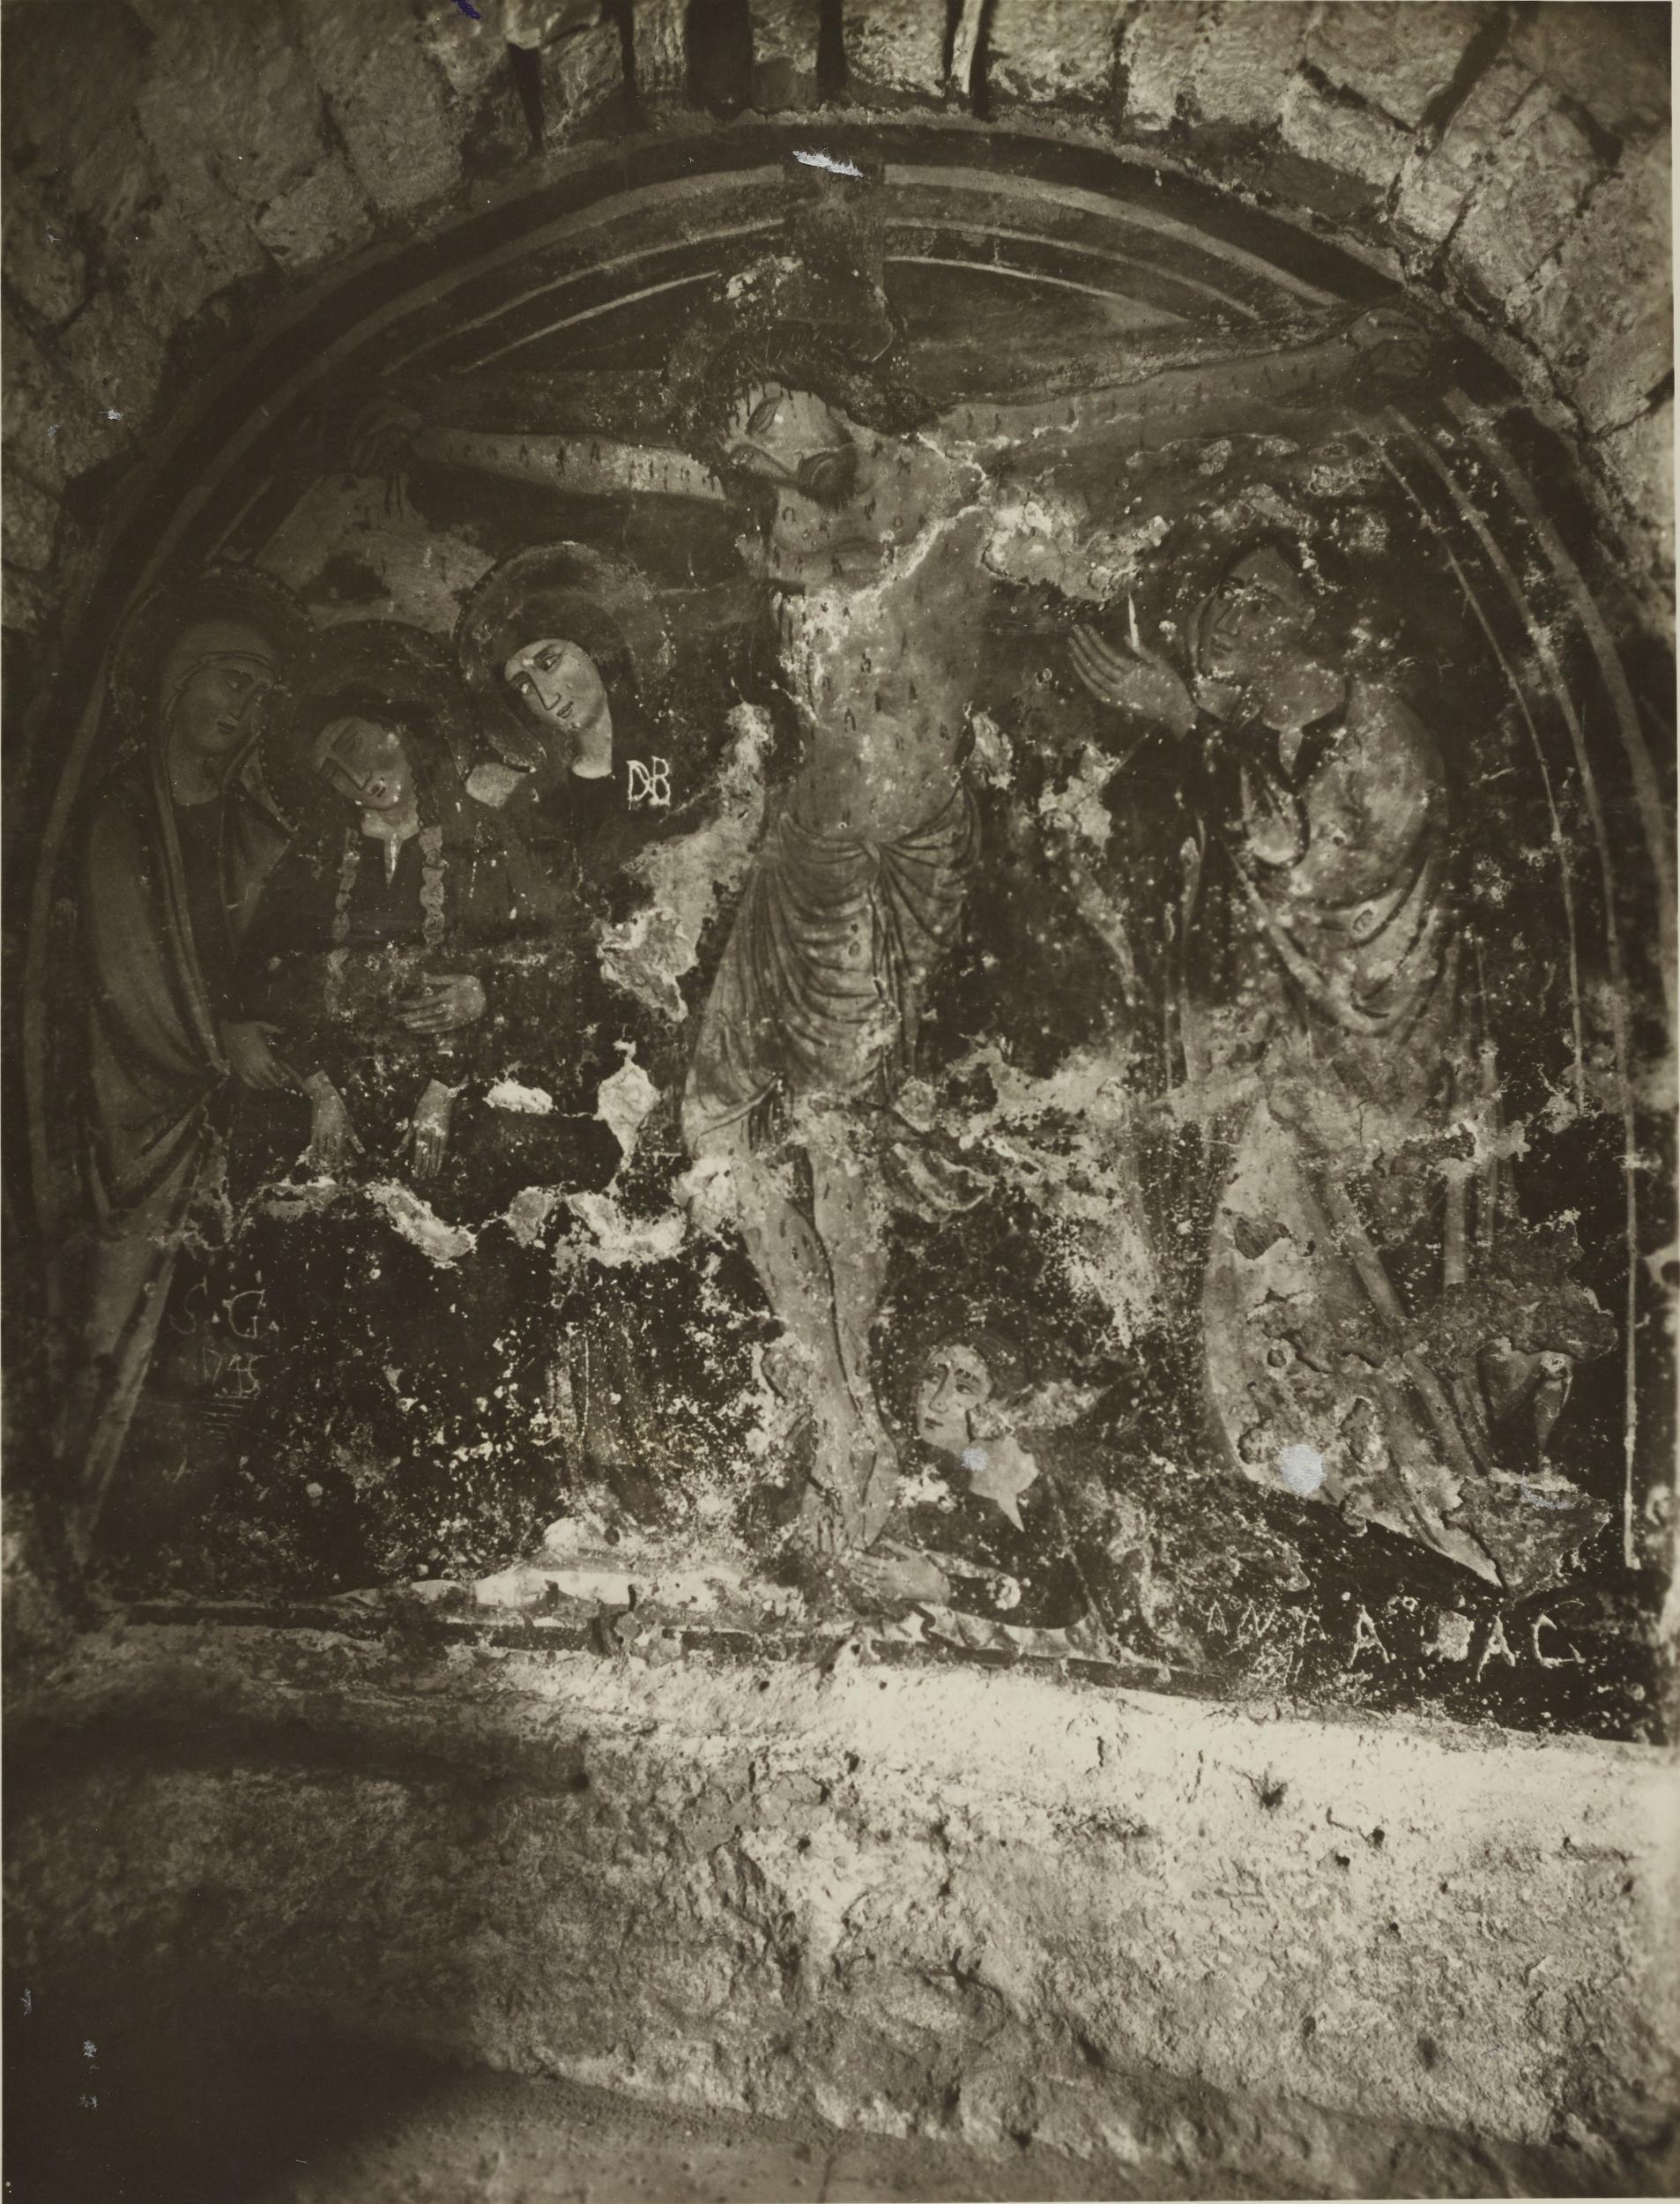 Fotografo non identificato, Andria - Chiesa di S. Croce, abside, crocifissione, 1926-1950, gelatina ai sali d'argento/carta, MPI131859